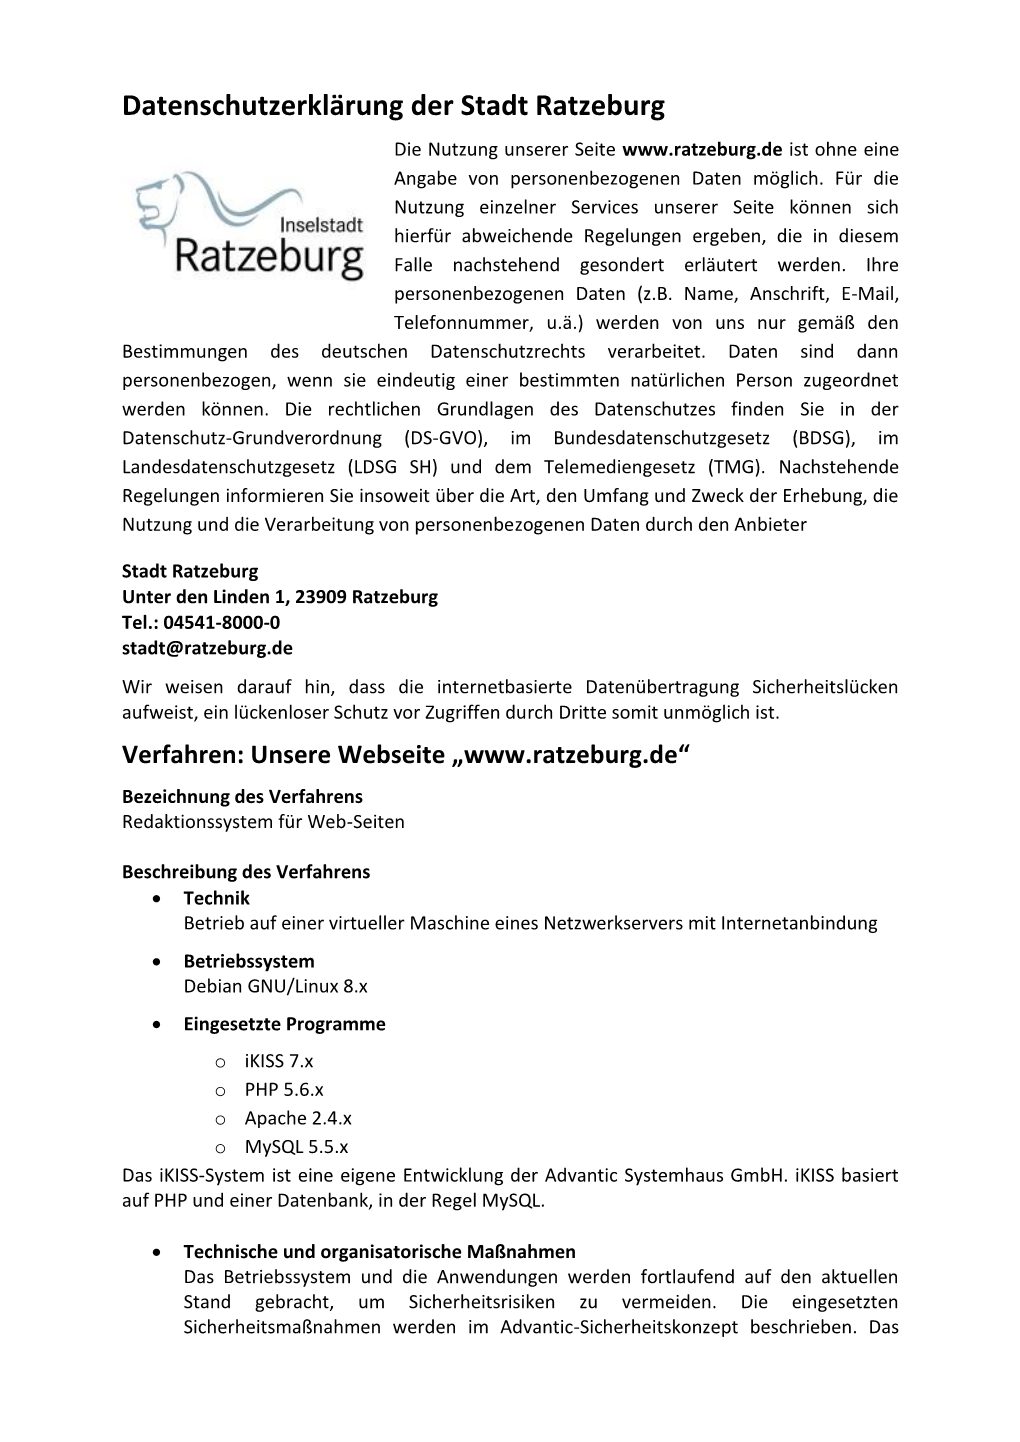 Datenschutzerklärung Der Stadt Ratzeburg Die Nutzung Unserer Seite Ist Ohne Eine Angabe Von Personenbezogenen Daten Möglich